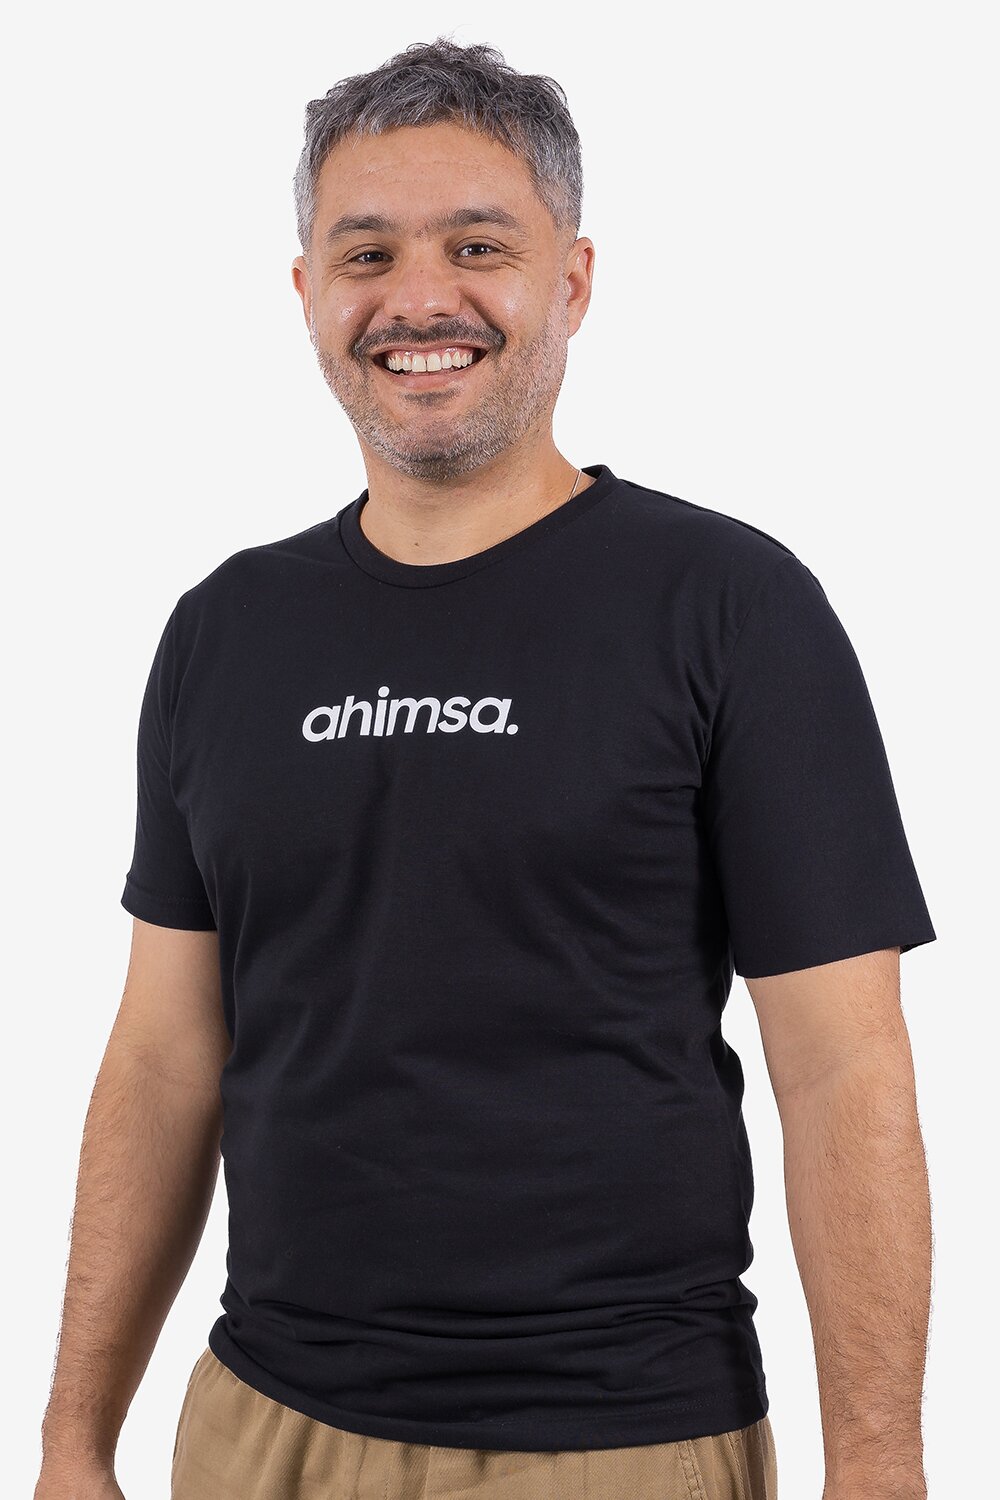 ahimsa-yogateria-tshirt-1